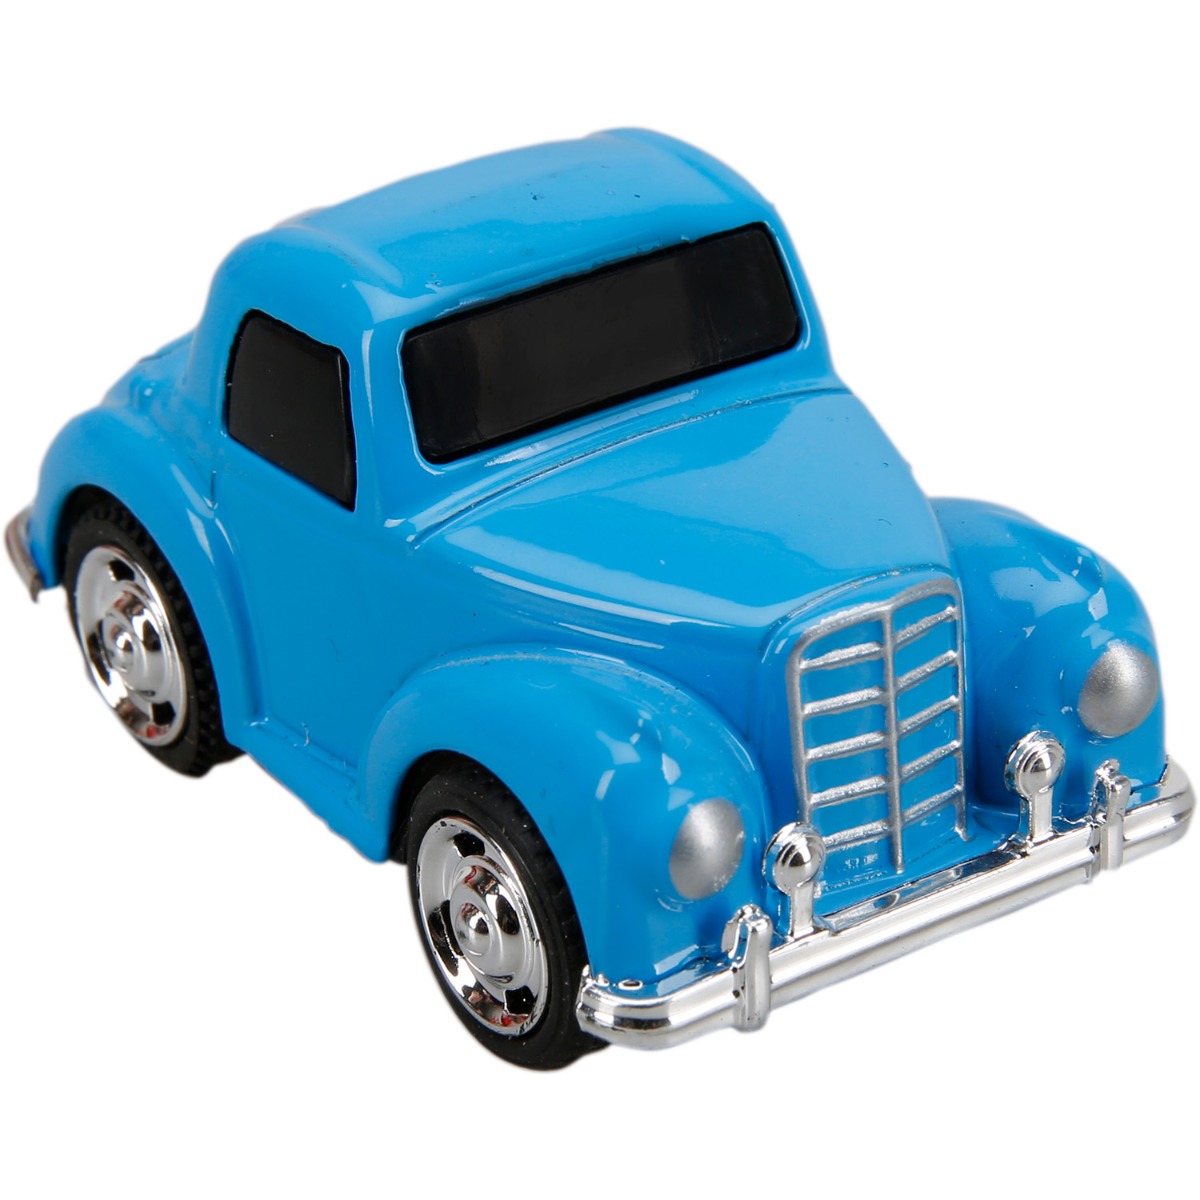  Masinuta din metal Mini Series, Maxx Wheels, 6 cm, Albastru 